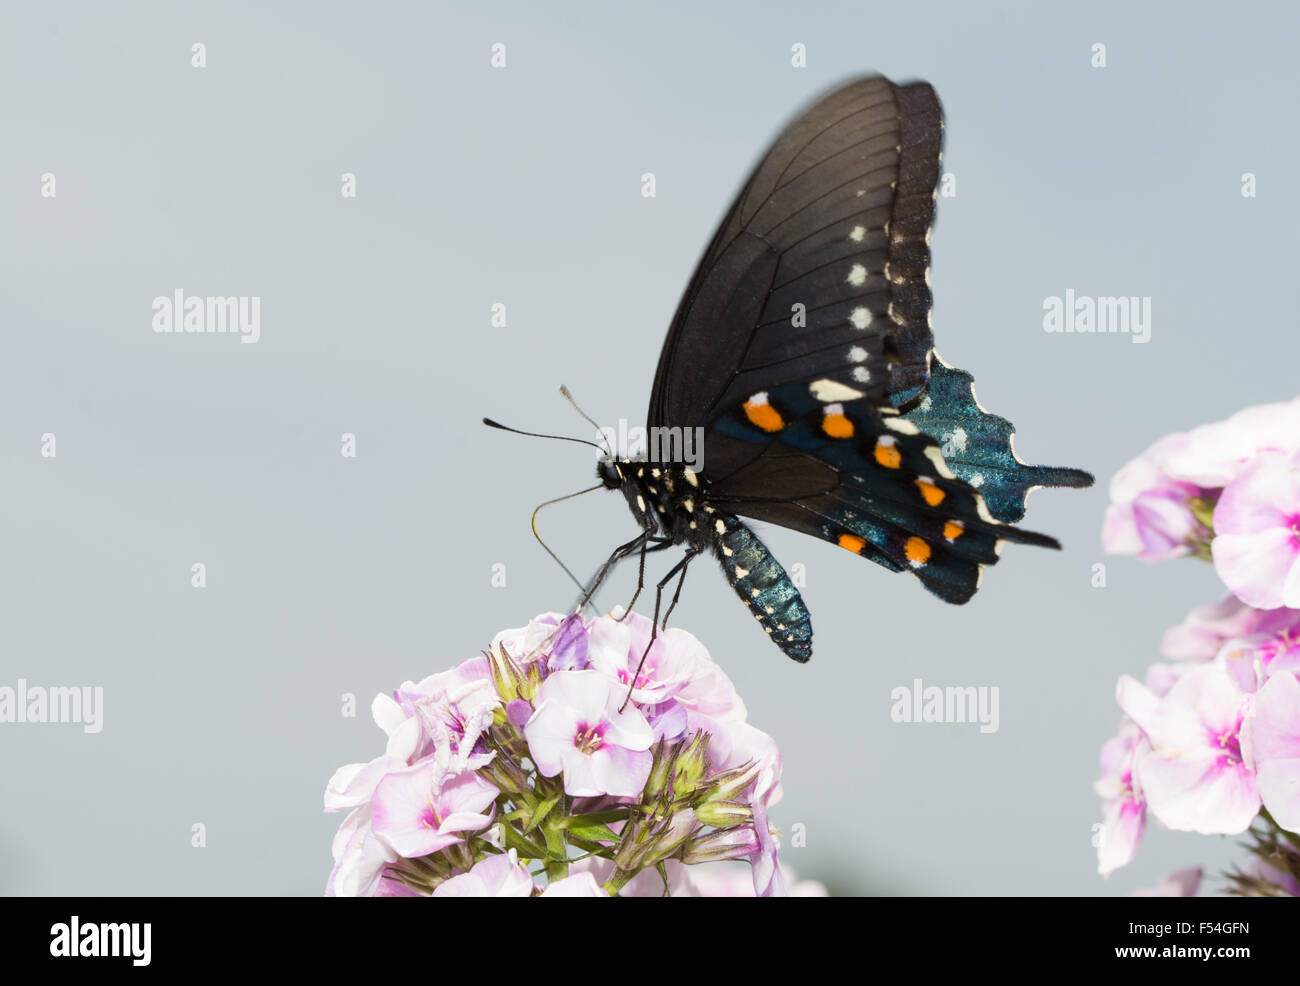 Pipevine Swallowtail butterfly sur rose Phlox fleurit en été du soleil Banque D'Images